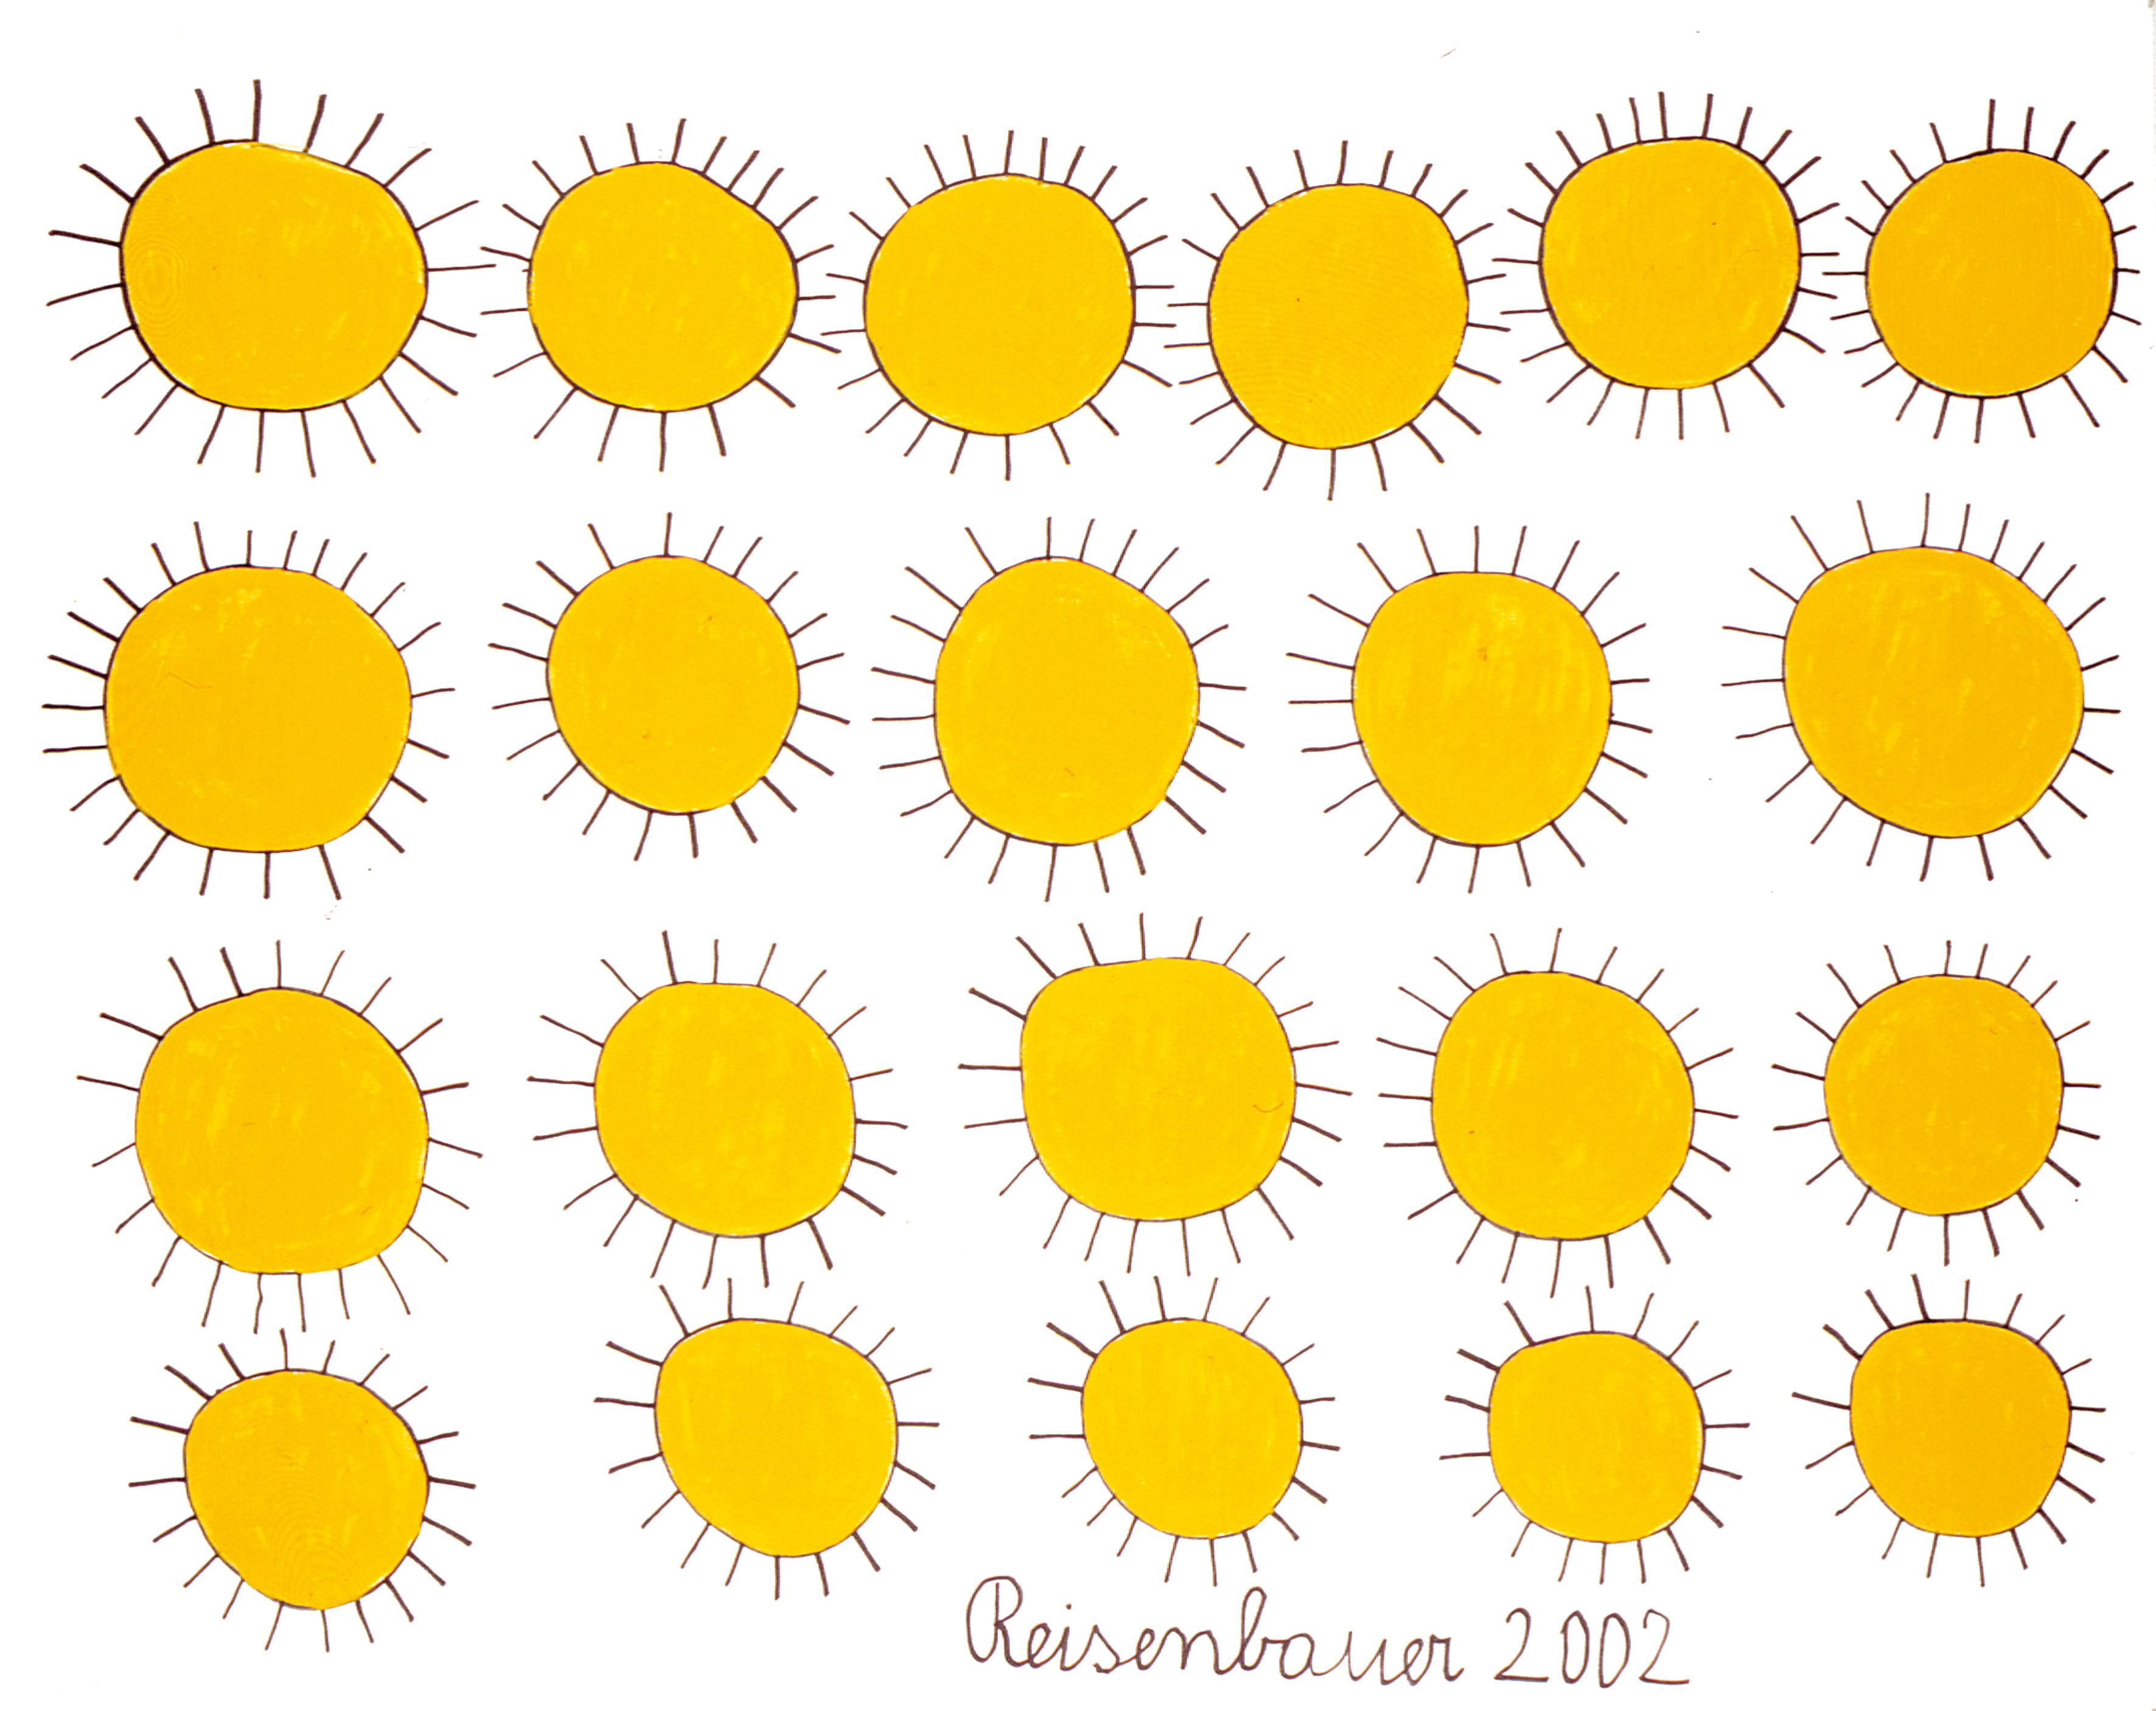 Heinrich Reisenbauer, Sonnen 2002, 160x200 cm, Edding, Acryl auf Leinwand © Privatstiftung - Künstler aus Gugging